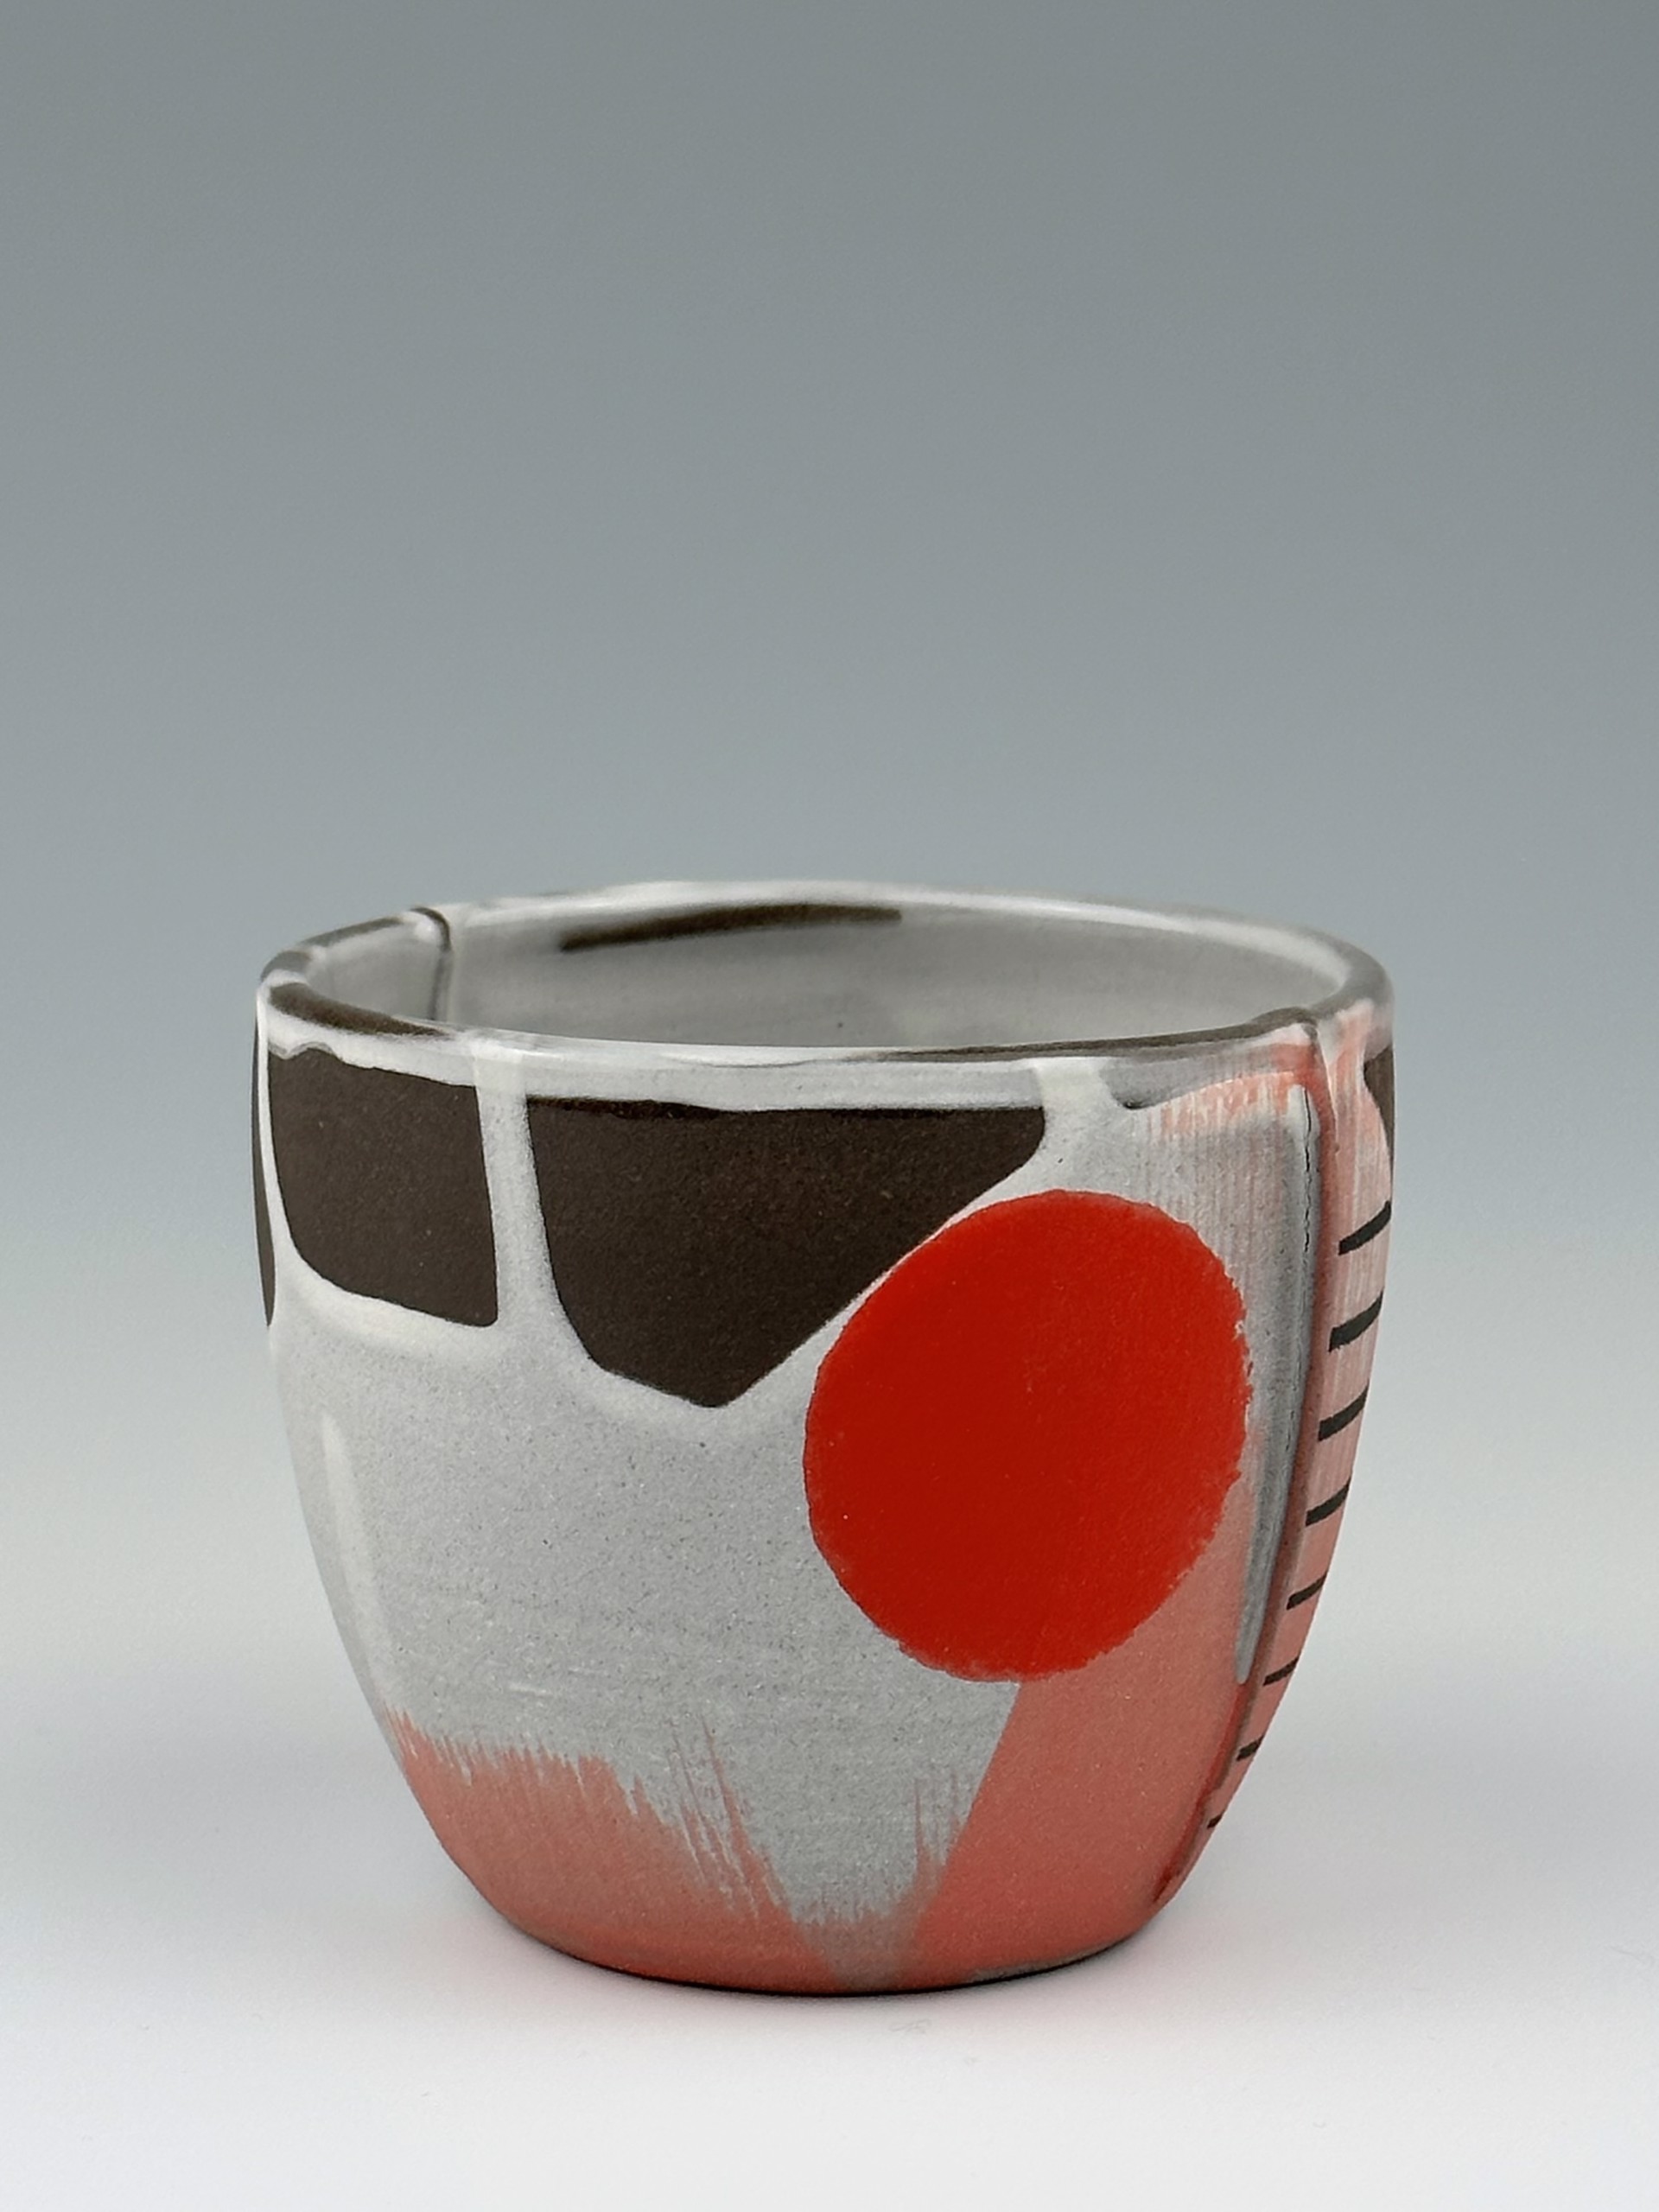 Cup No. 3 by Tara Dawley